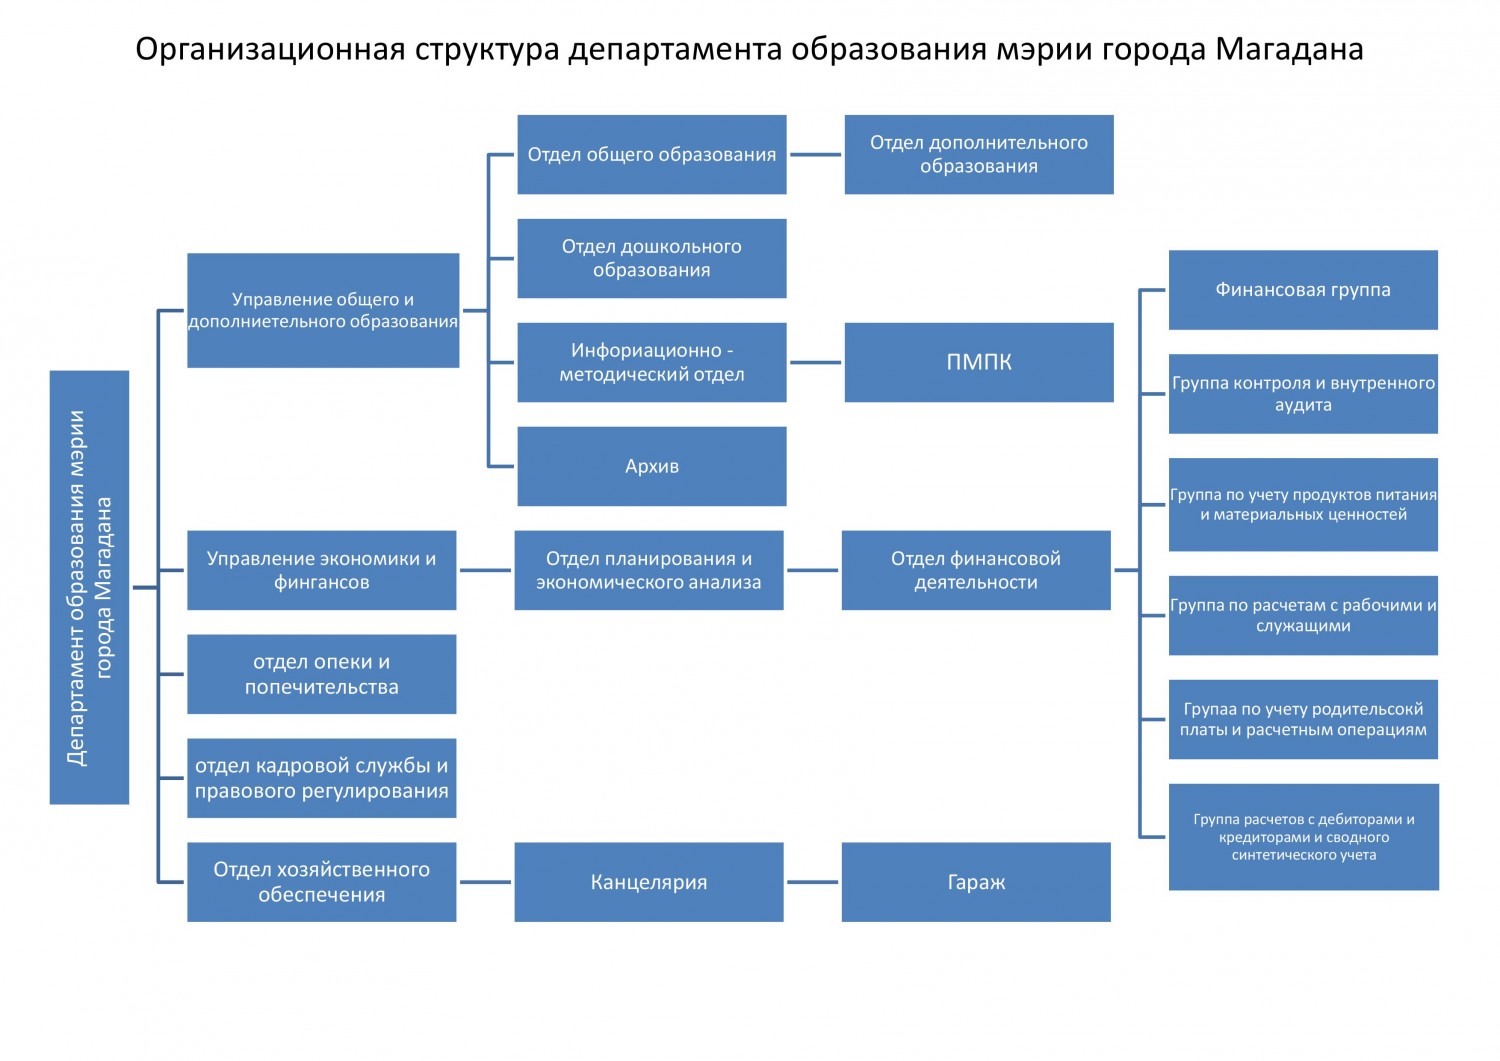 Сайт министерства управления образования. Структура департамента образования Москвы. Структура мэрии города Магадана.